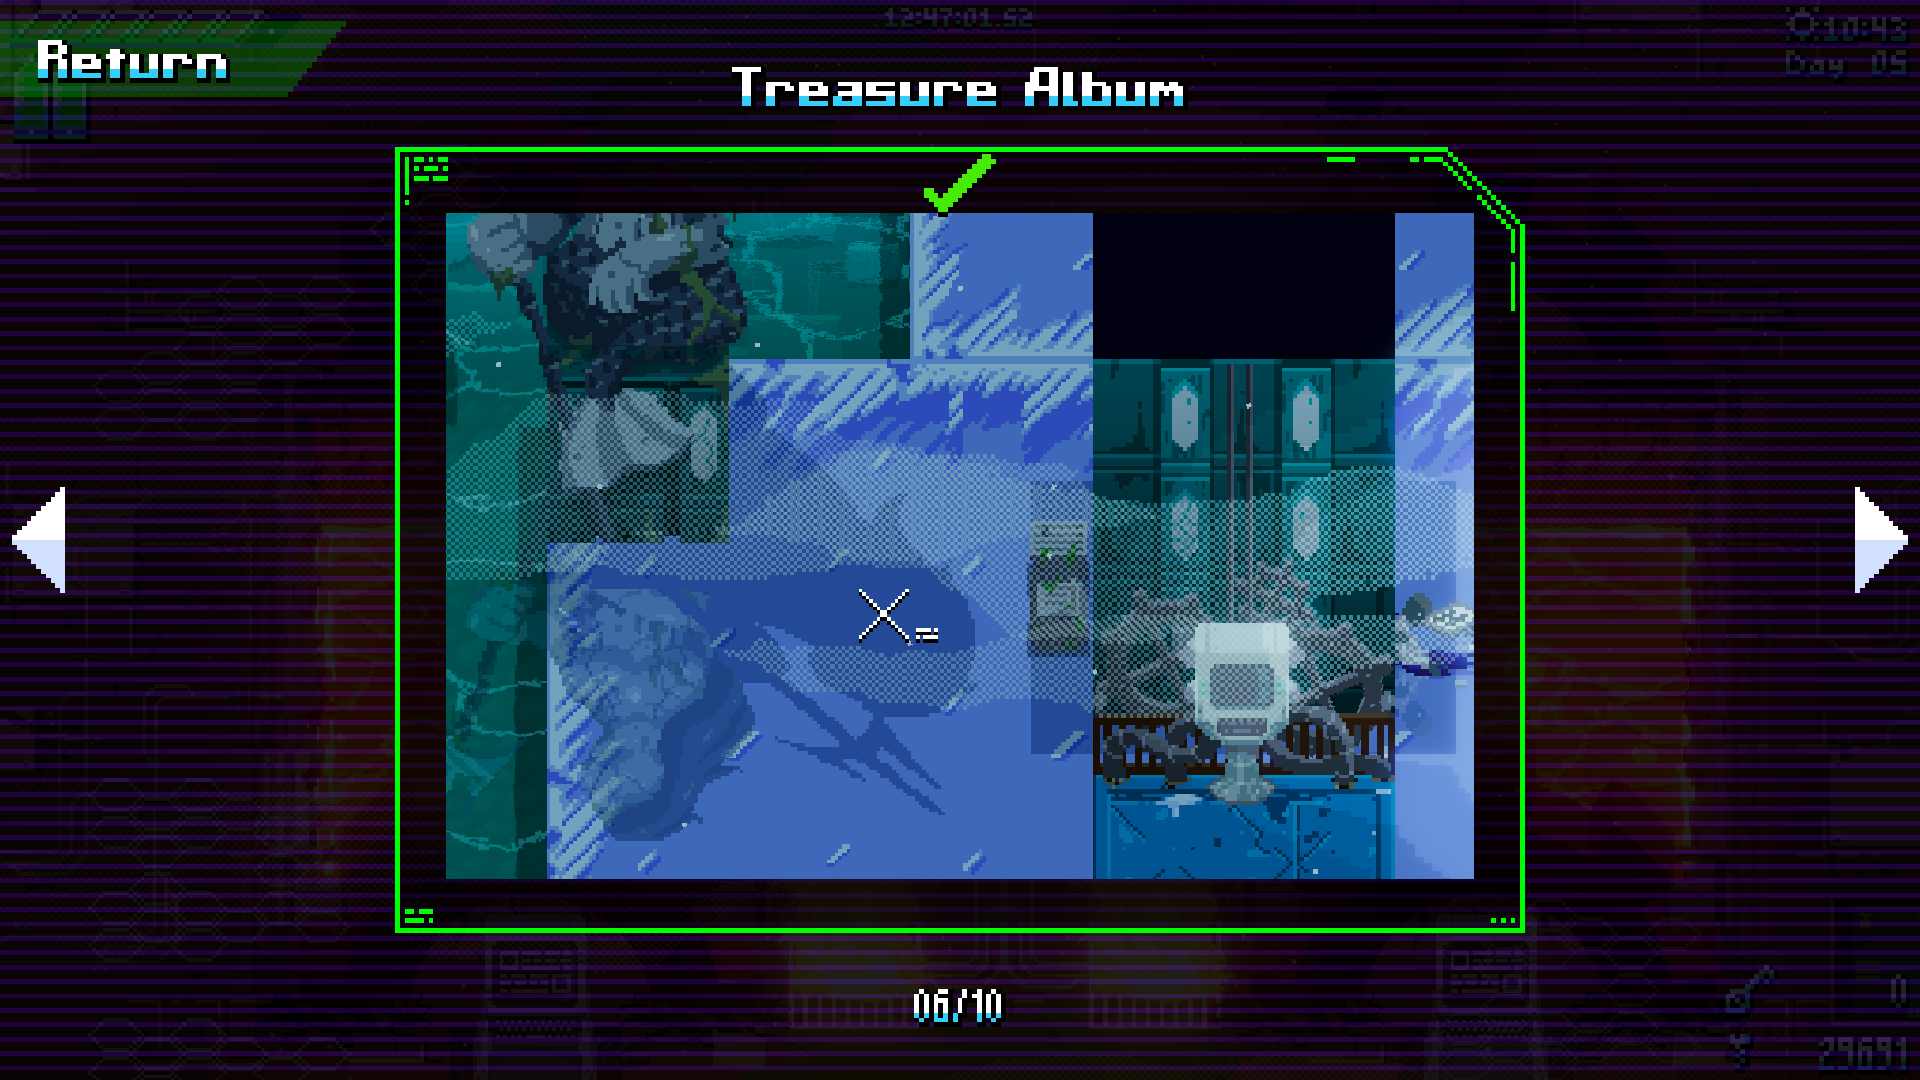 Treasure album image 13